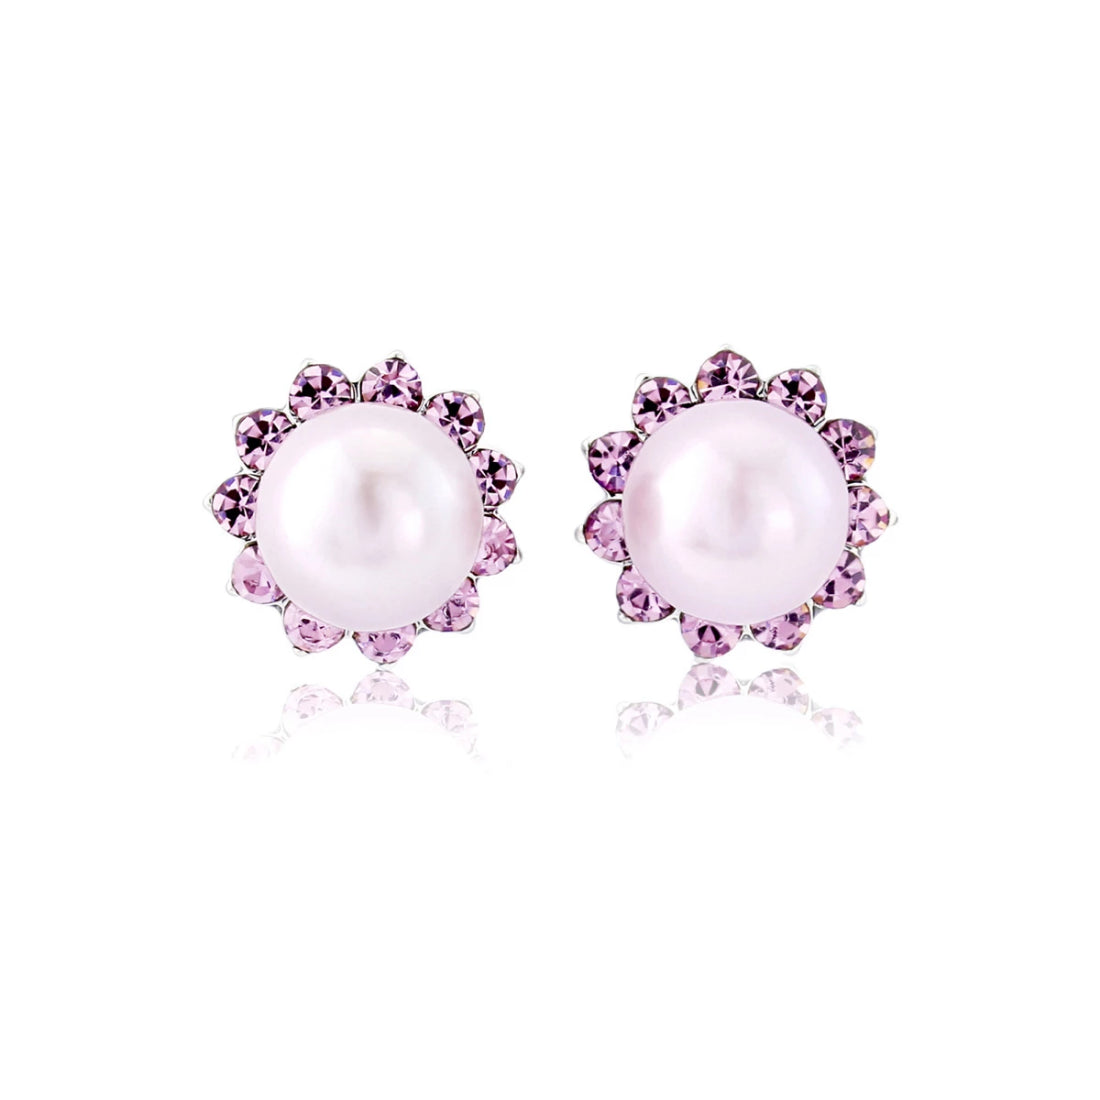 Haze of Amethyst Pearl Stud Earrings for Weddings & Bridesmaids